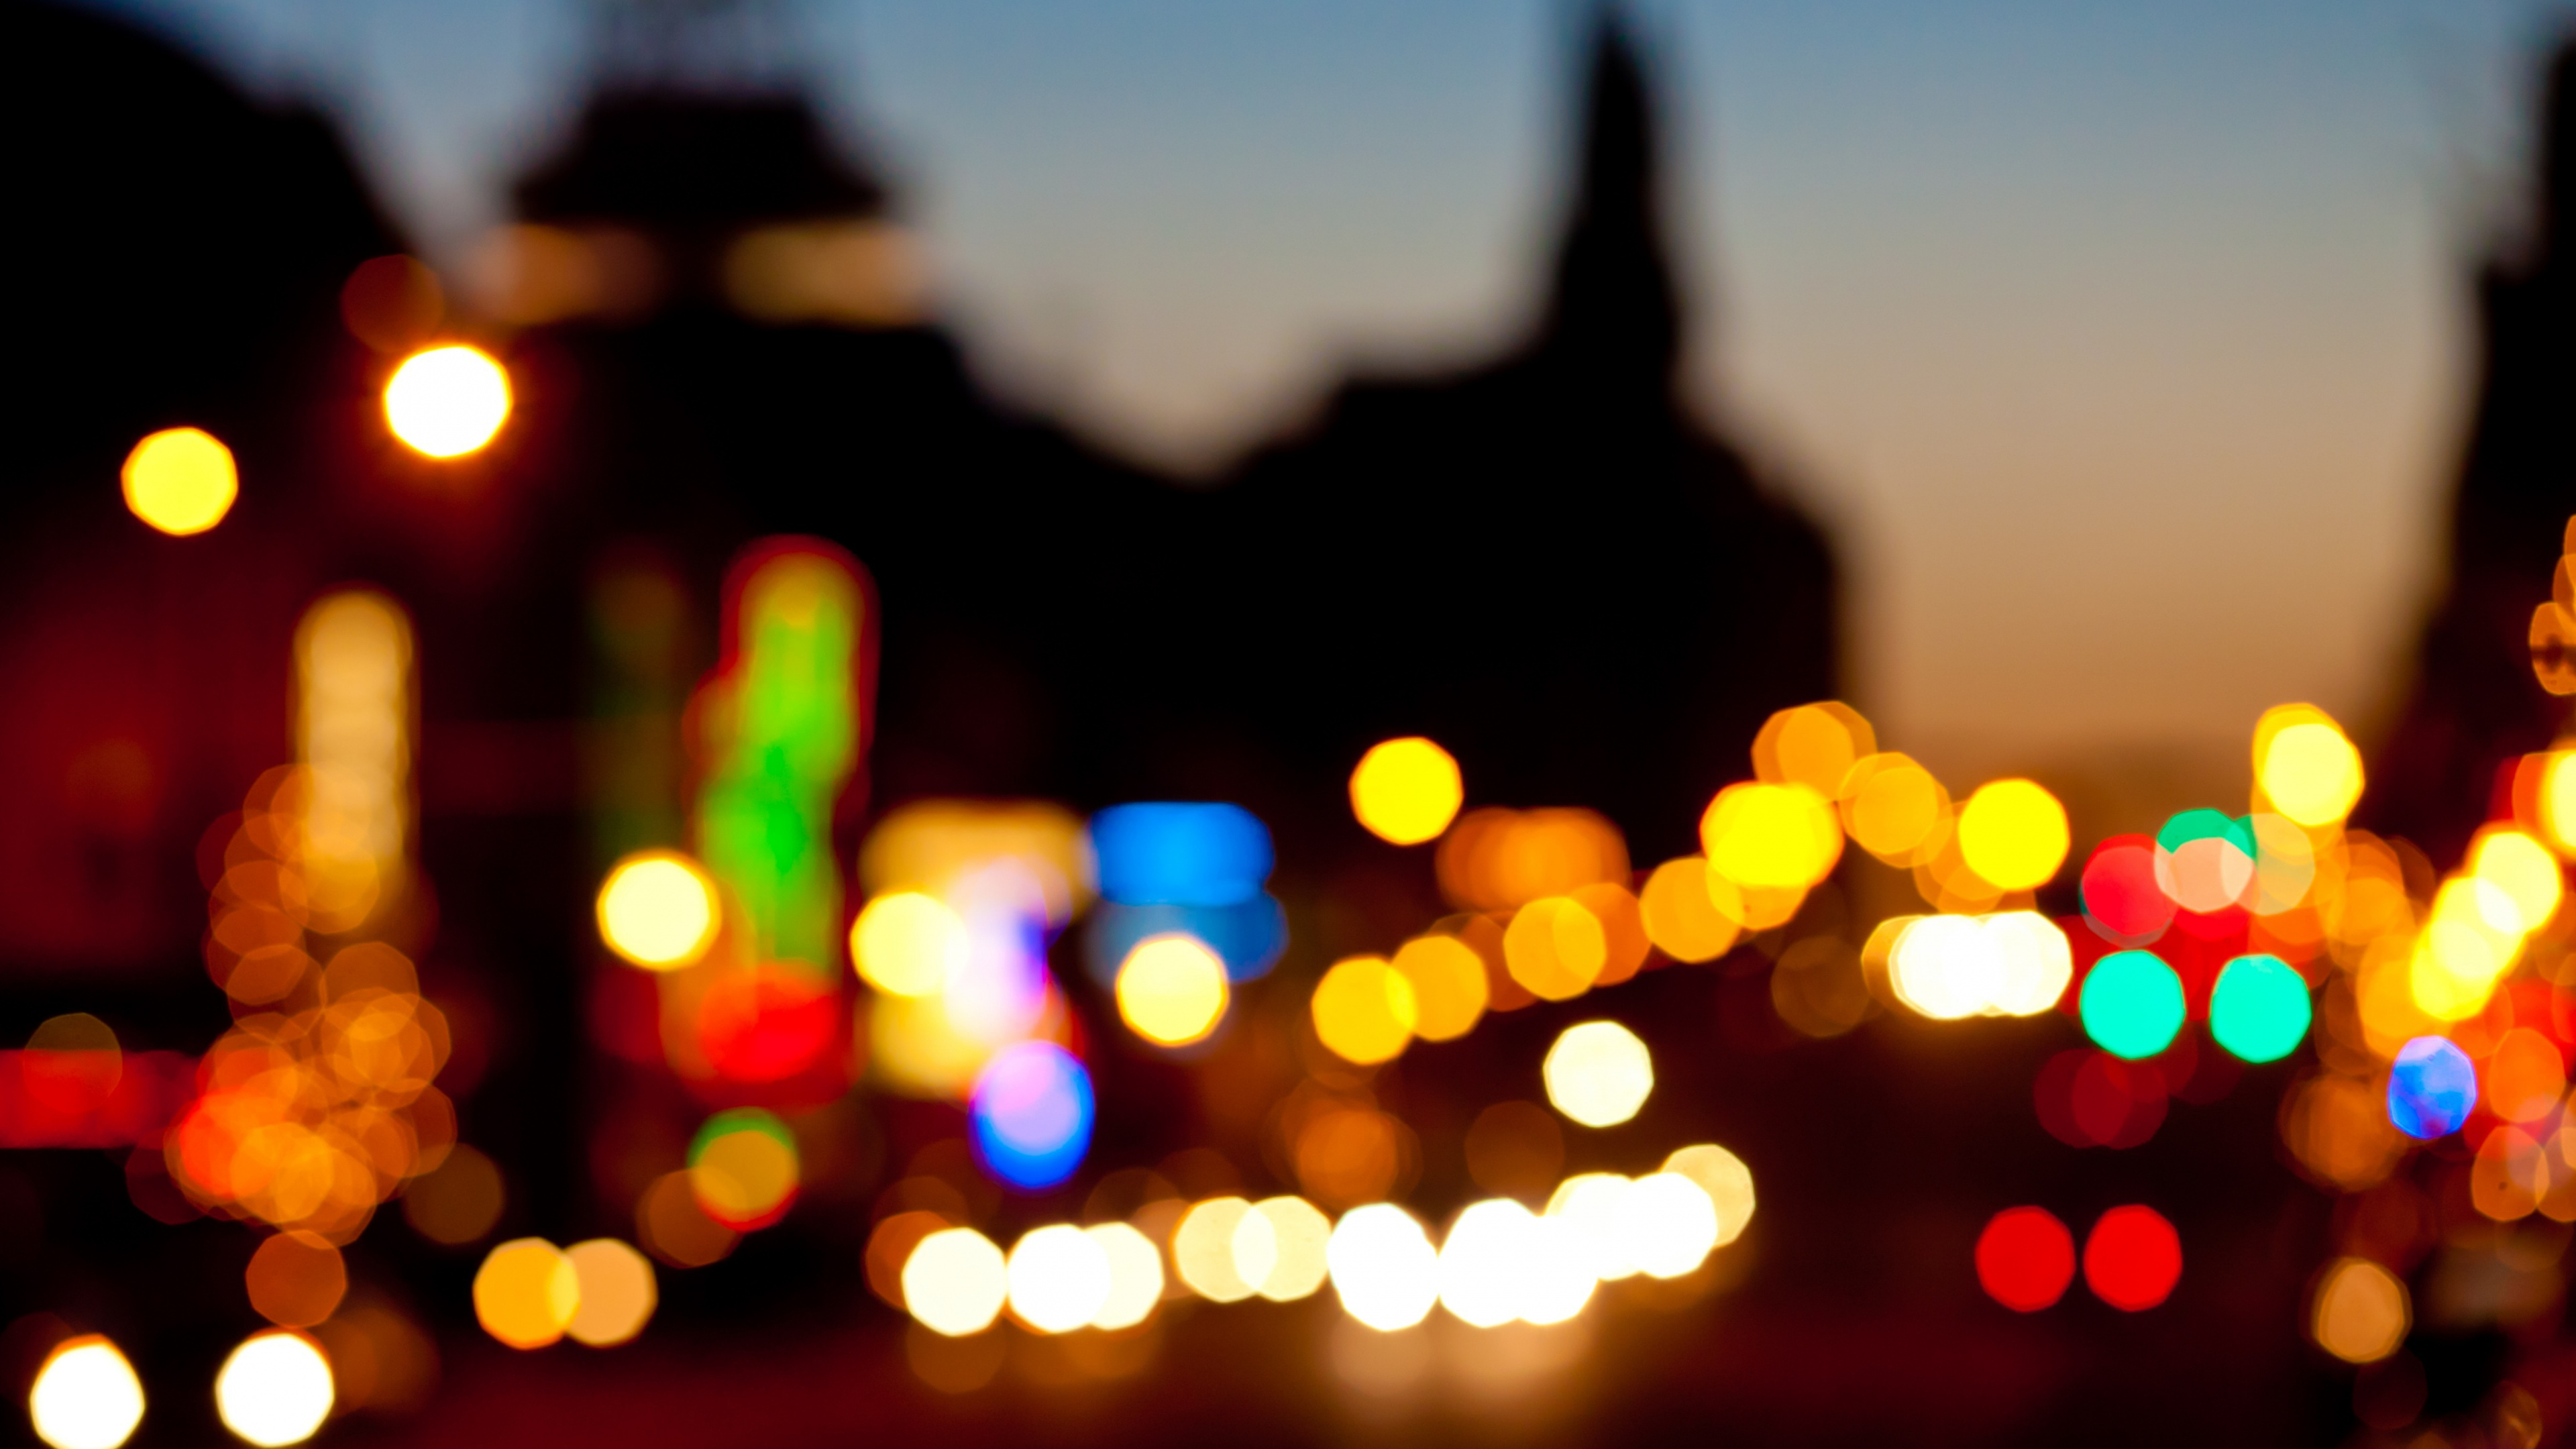 Photographie Bokeh Des Lumières de la Ville Pendant la Nuit. Wallpaper in 3840x2160 Resolution